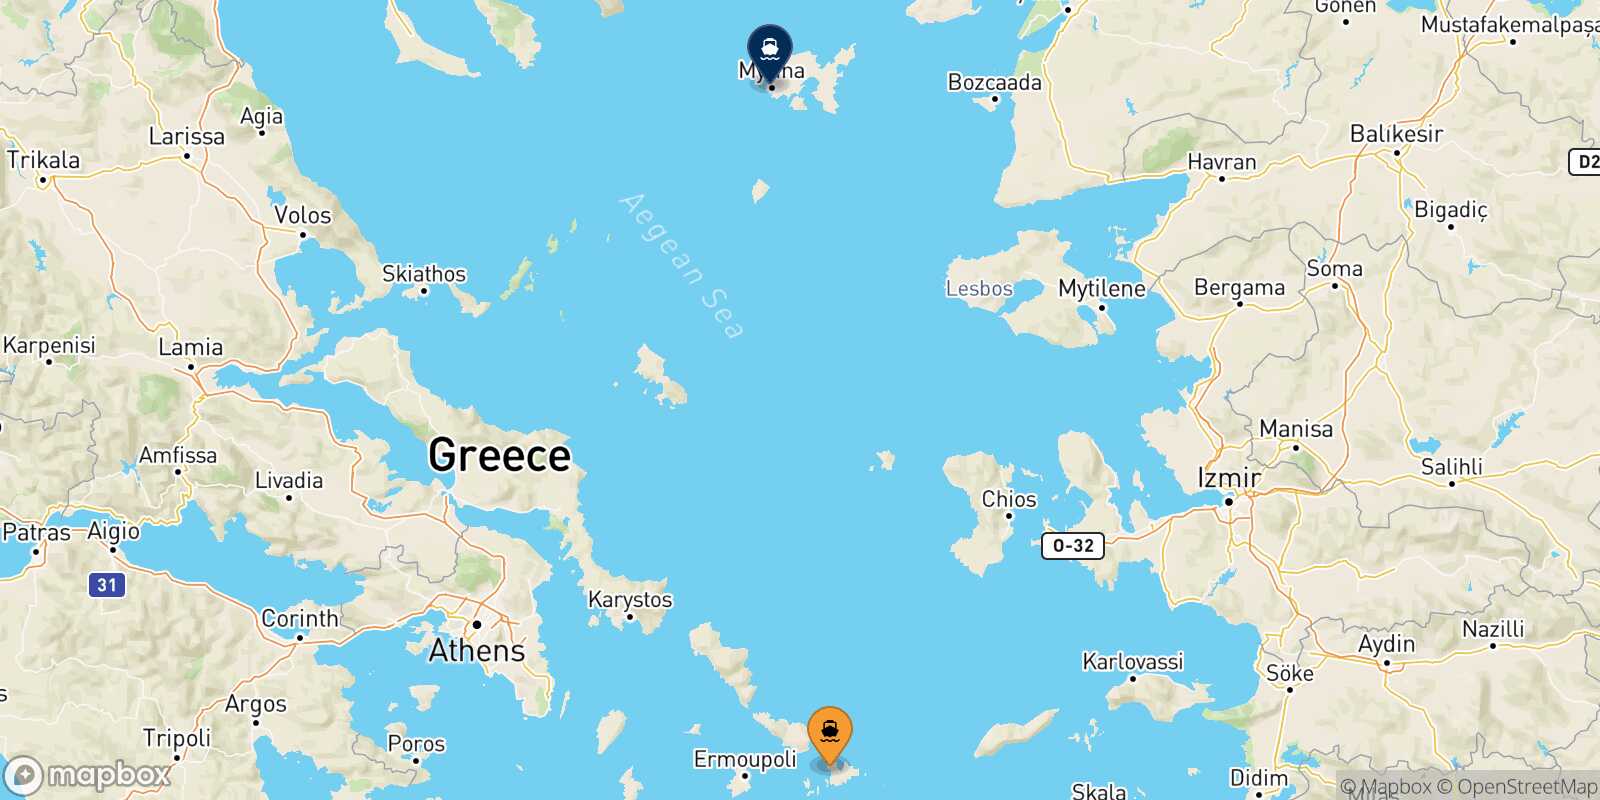 Mykonos Myrina (Limnos) route map